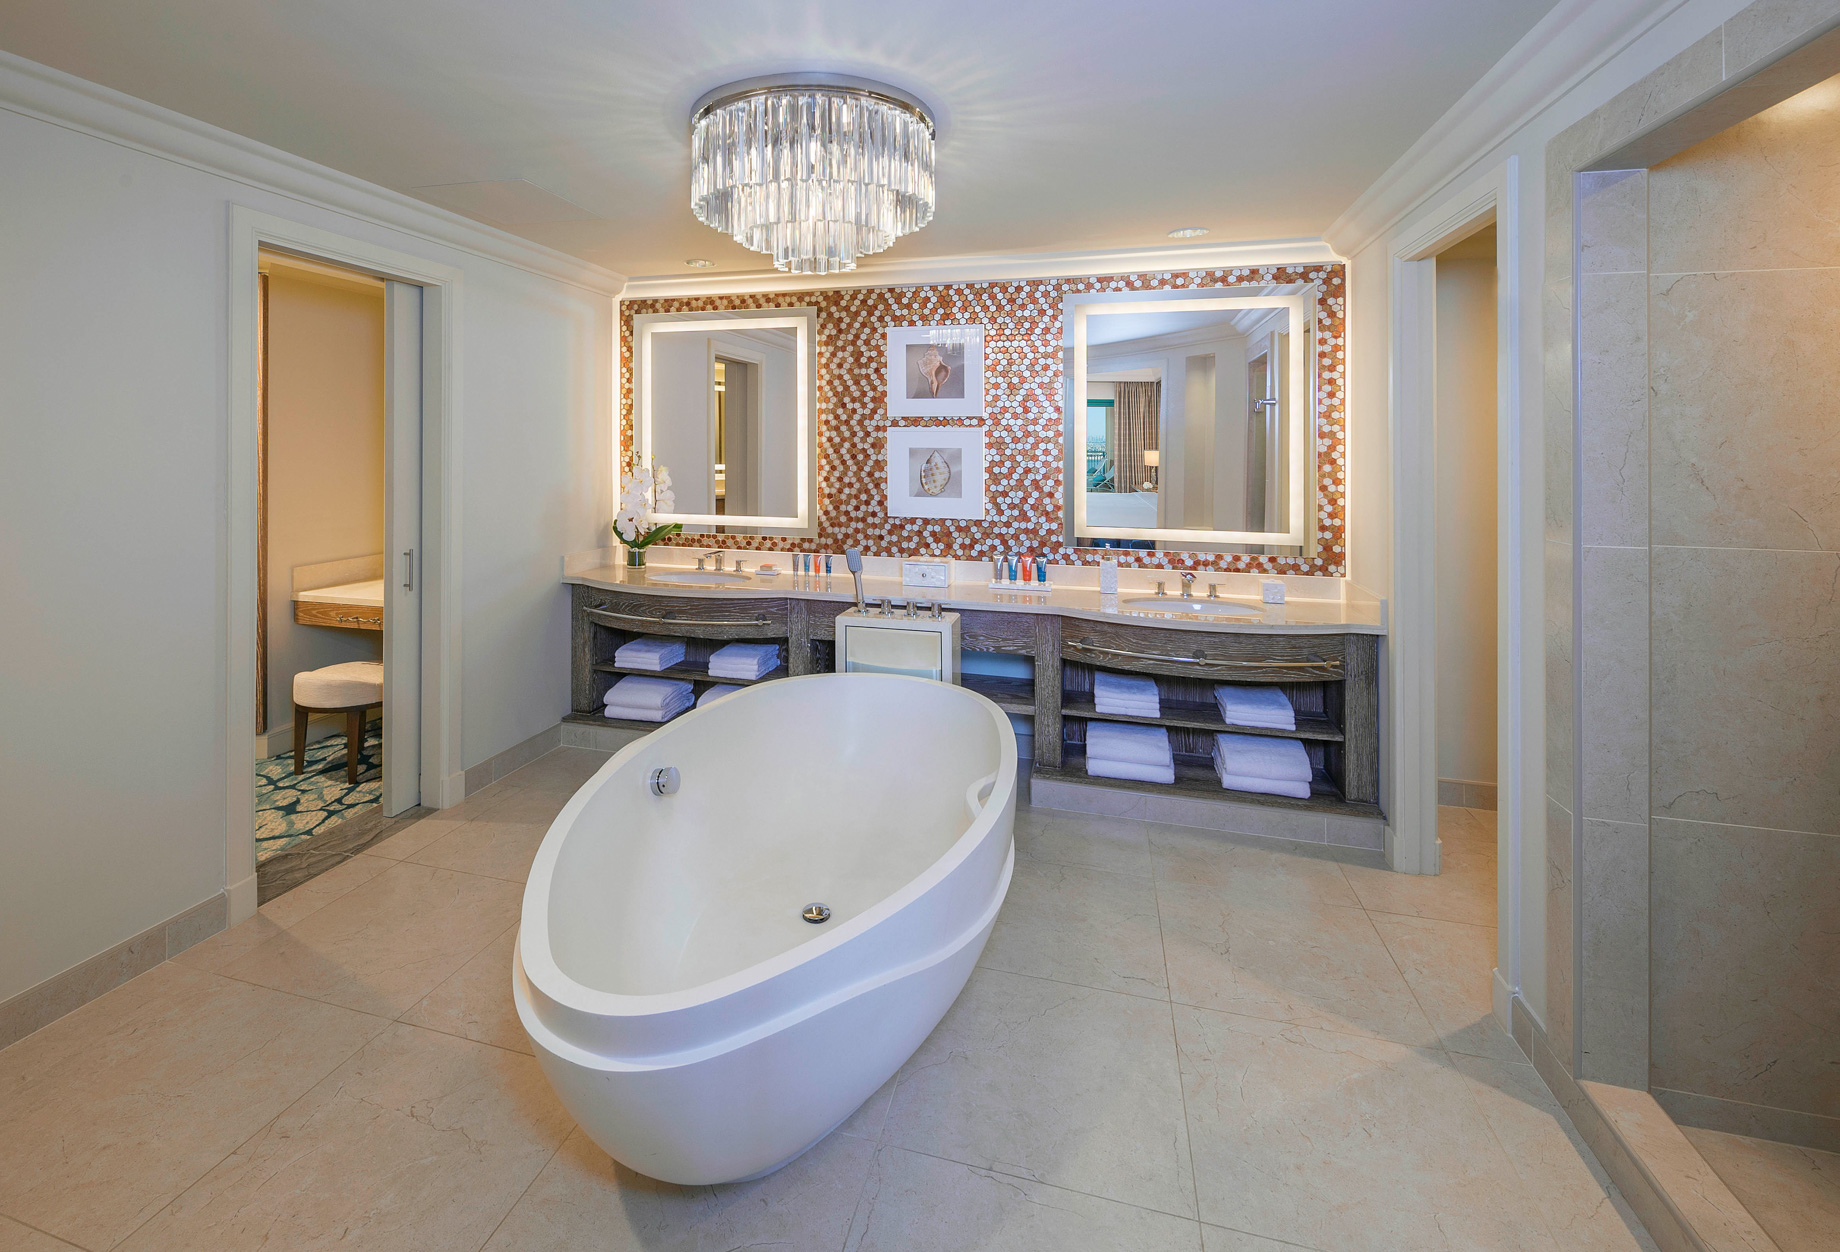 Atlantis The Palm Resort – Crescent Rd, Dubai, UAE – Terrace Club Suite Bathroom